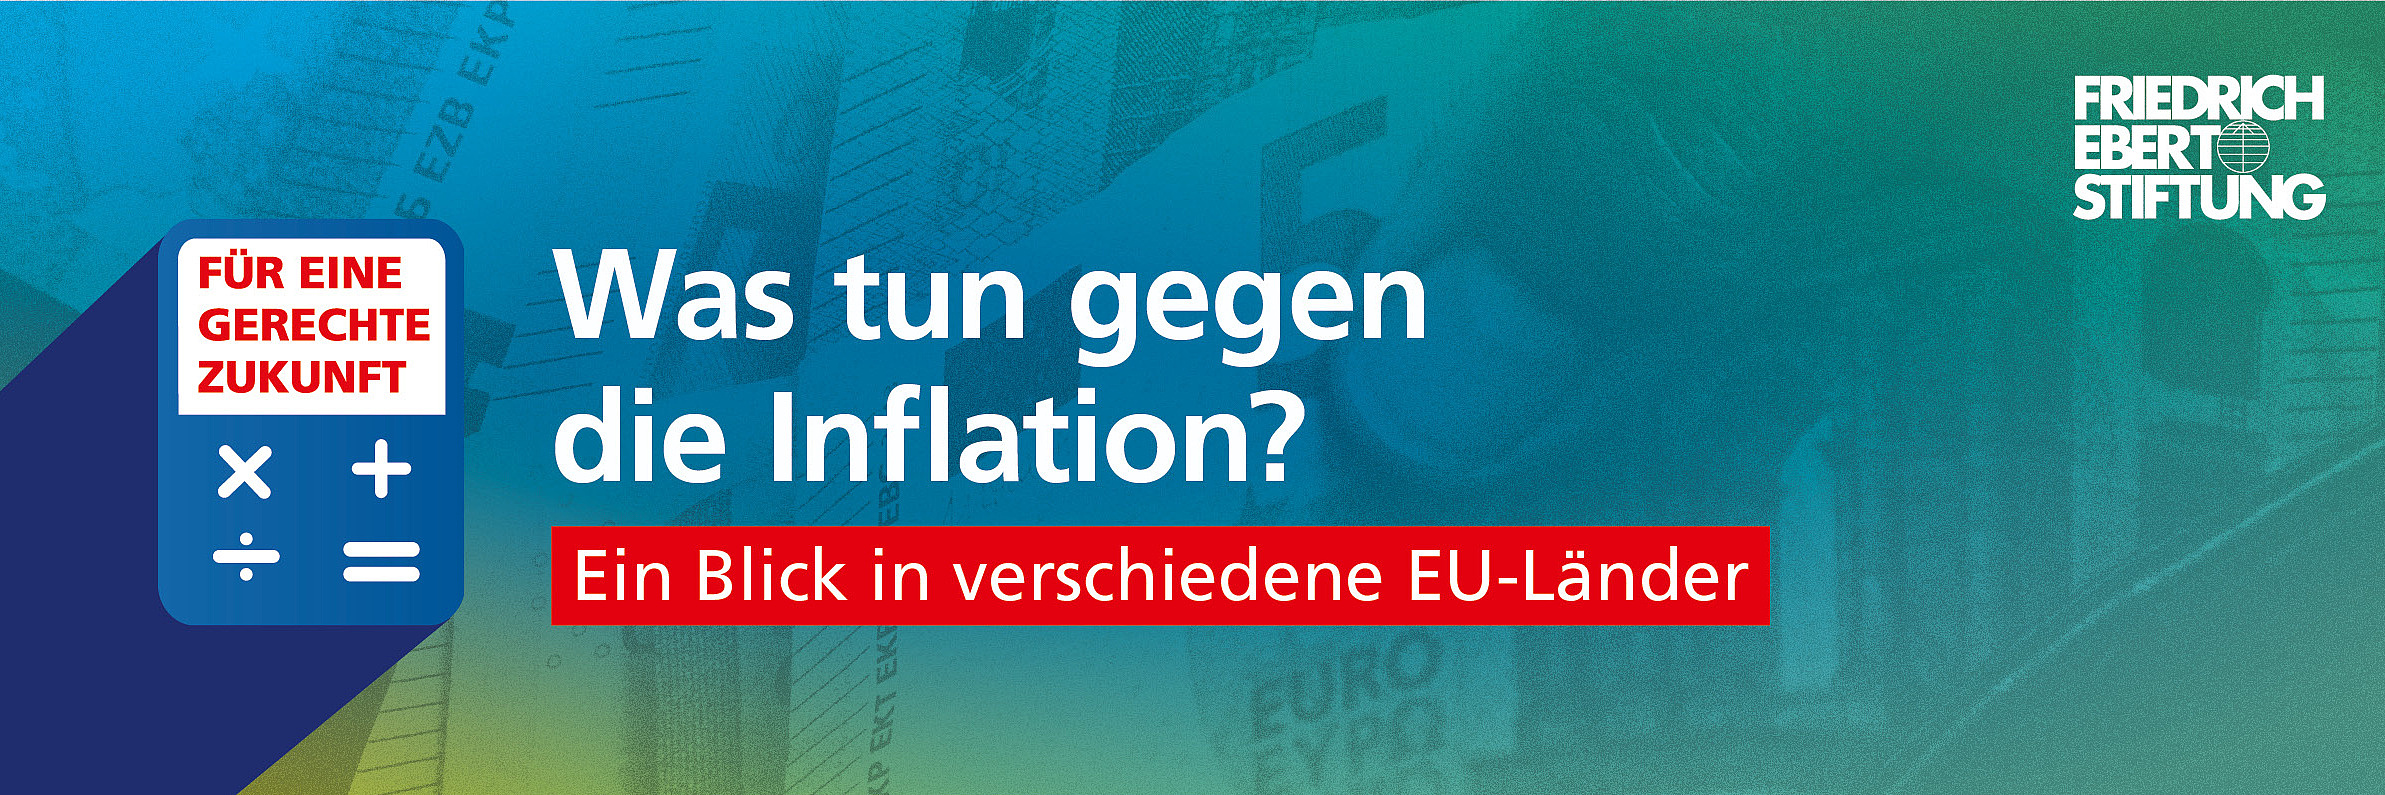 Blau-grün-gelb verwischter Hintergrund. Darauf der weiße Schriftzug "Was tun gegen die Inflation? Ein Blick in verschiedene EU-Länder".